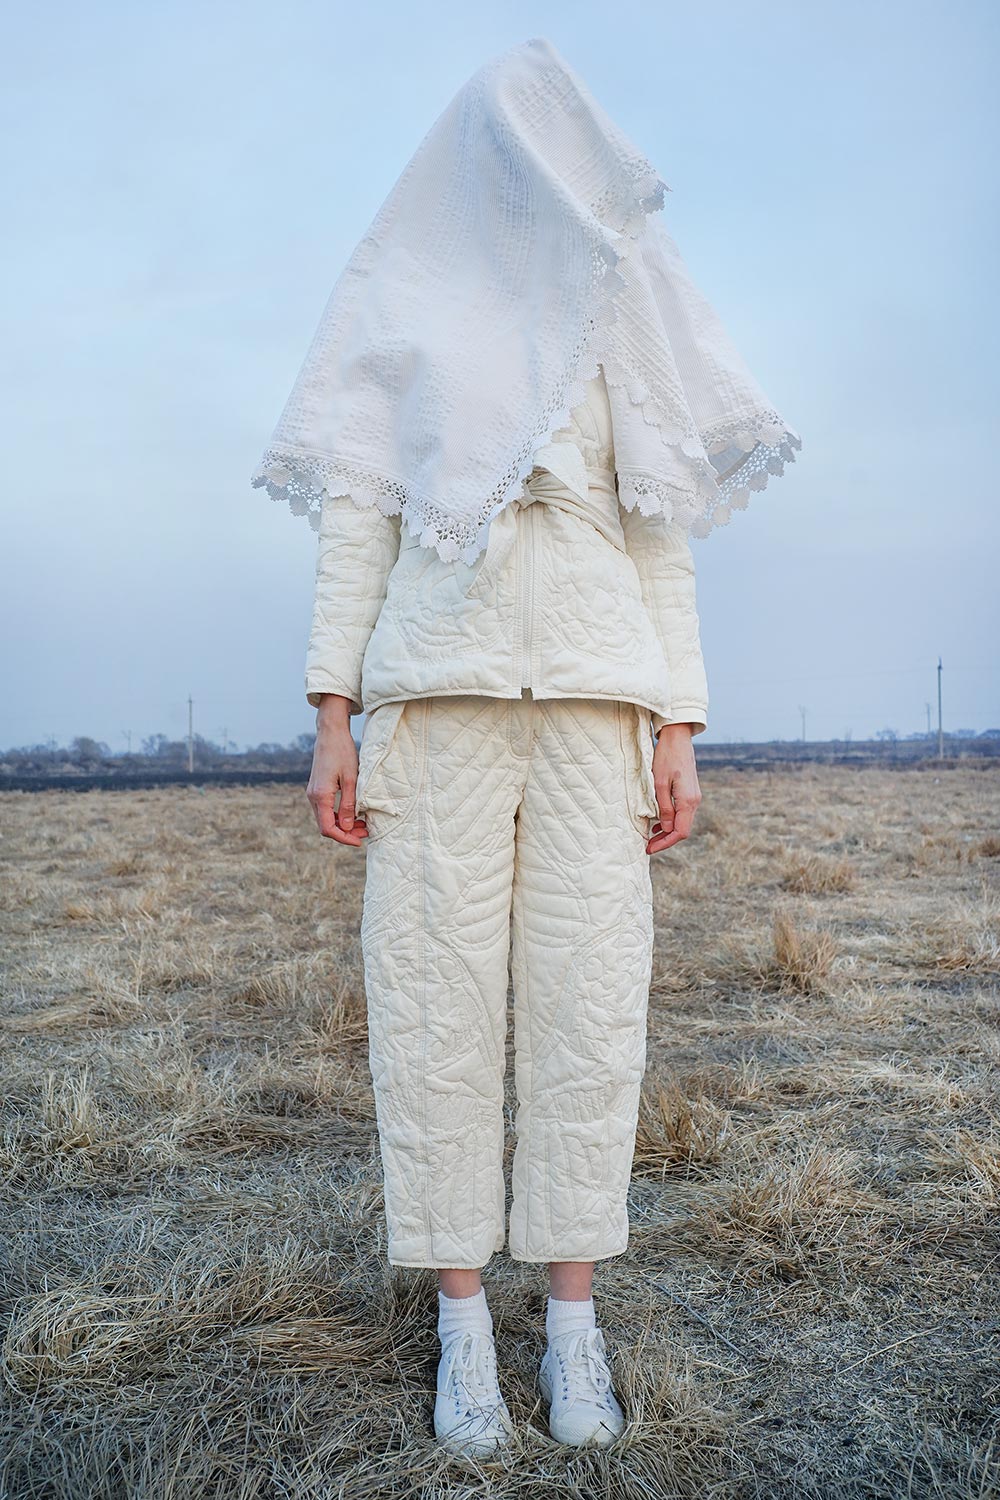 White Quilted Pants - Masha Lamzina